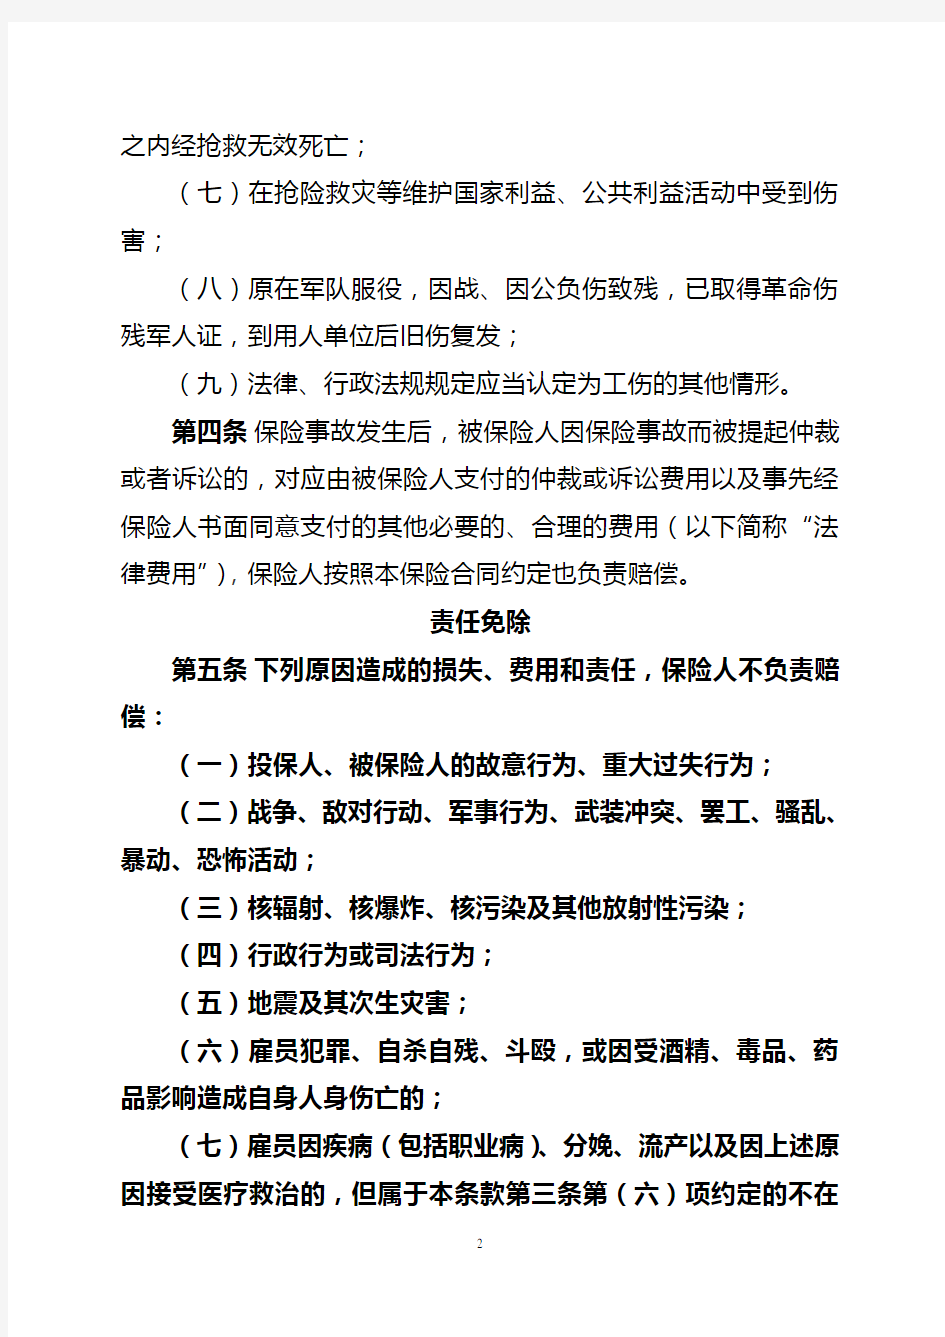 中国人民财产保险股份有限公司雇主责任保险条款(2015版)